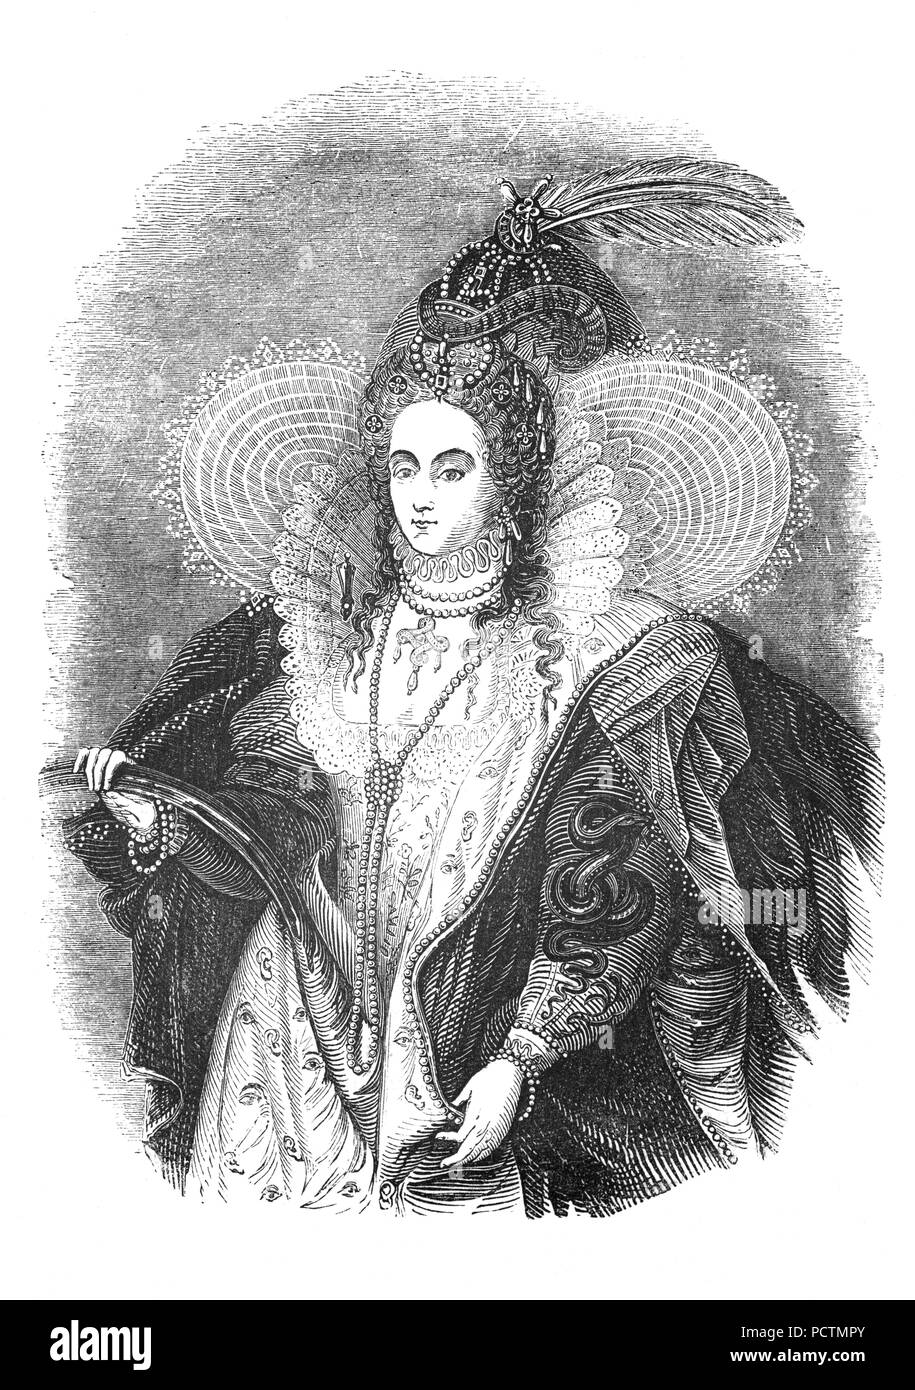 Portrait d'Elizabeth I () Maalouf, reine d'Angleterre et l'Irlande à partir du 17 novembre 1558 jusqu'à sa mort le 24 mars 1603. Parfois appelée la reine vierge, Gloriana ou bonne reine Bess, Elizabeth a été le dernier monarque de la maison de Tudor. Banque D'Images